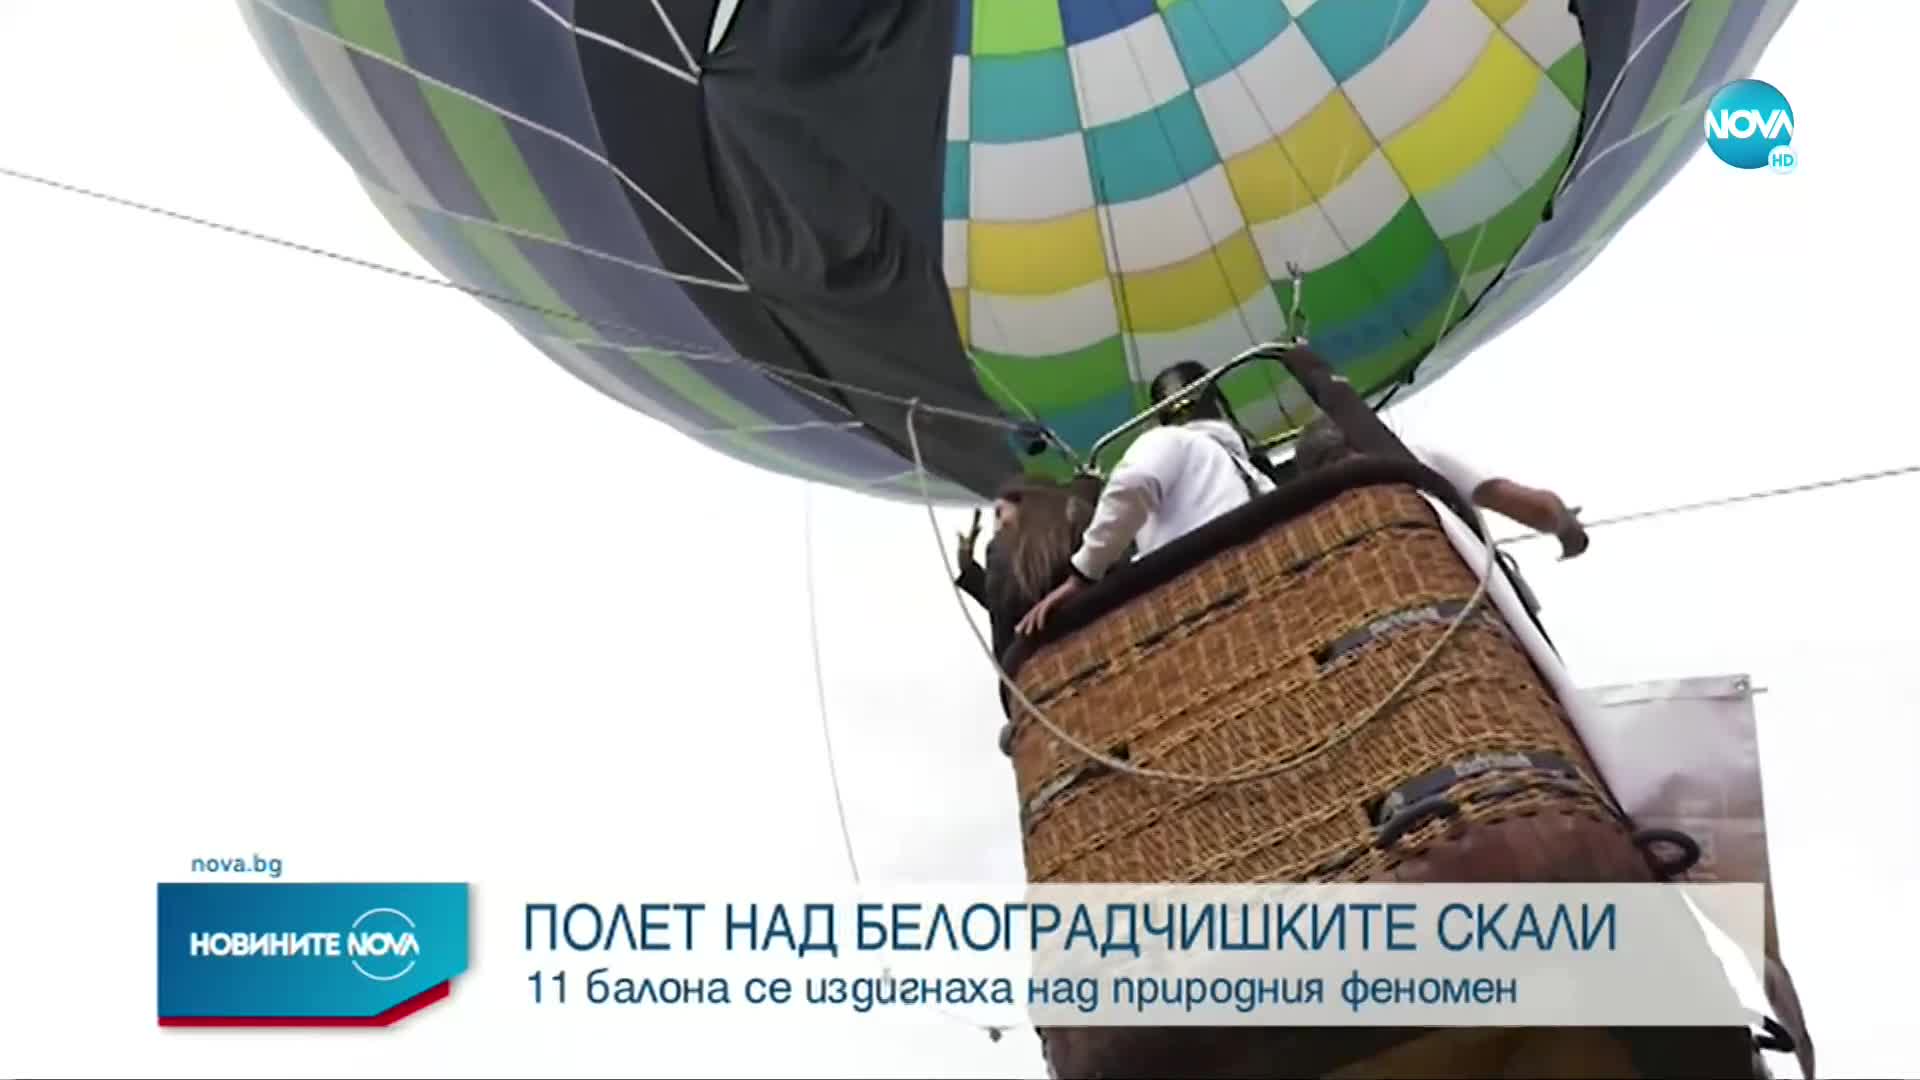 Десетки балони полетяха е небето над Белоградчишките скали